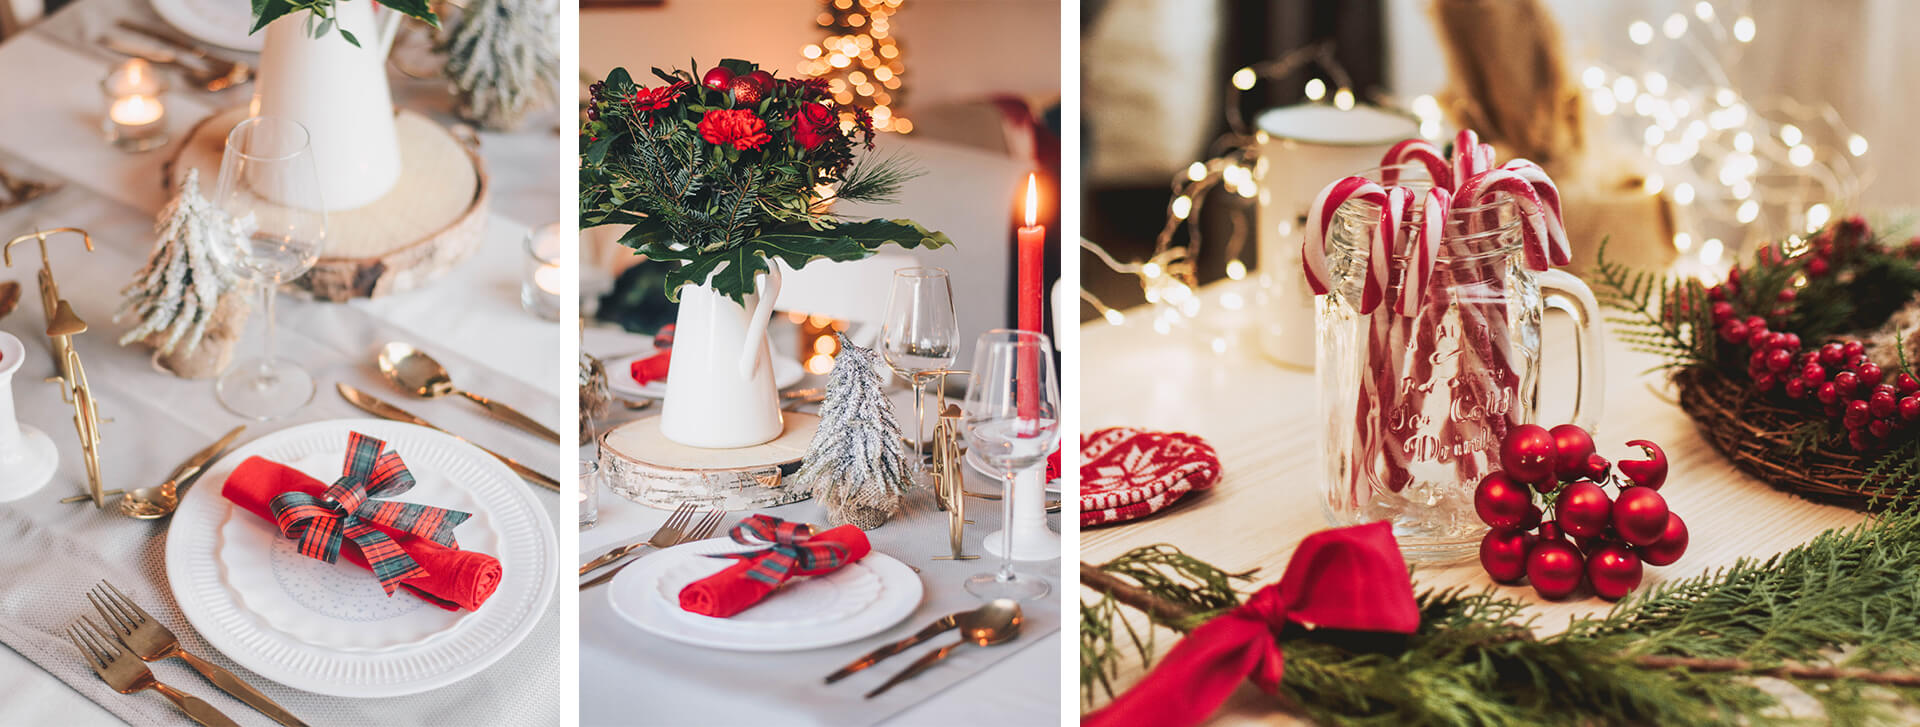 Dekoracje stołu na Boże Narodzenie - jak ładnie przystroić świąteczną kolację?